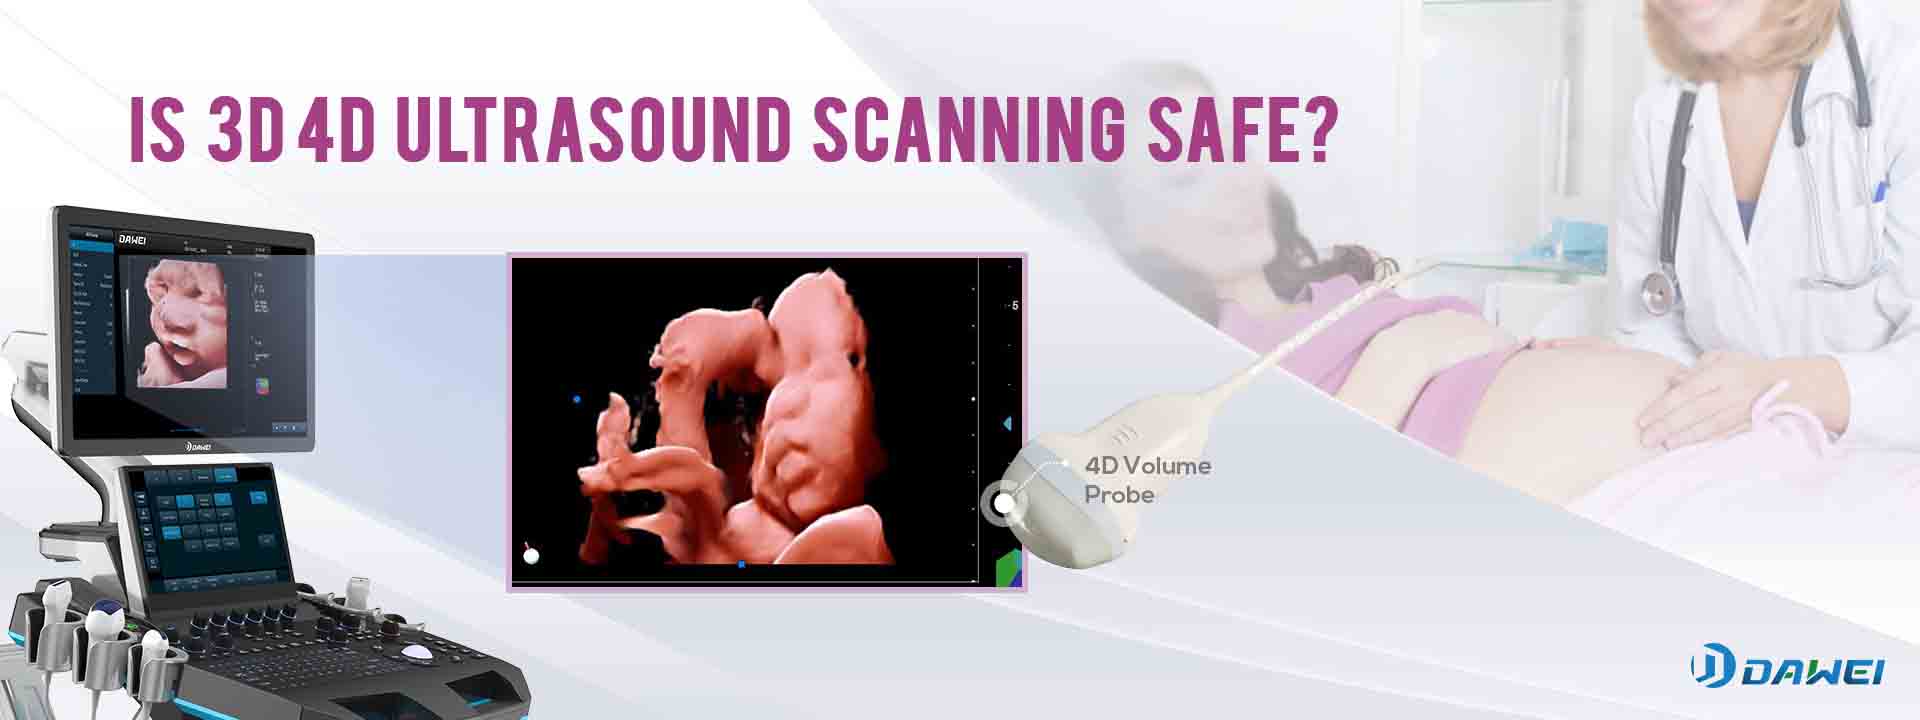 Ukuskena kwe-3D/4D ultrasound kusebenzisa i-ultrasound efanayo ukuze kwakhiwe isithombe esingcono ngesithombe esithuthukisiwe sesofthiwe.